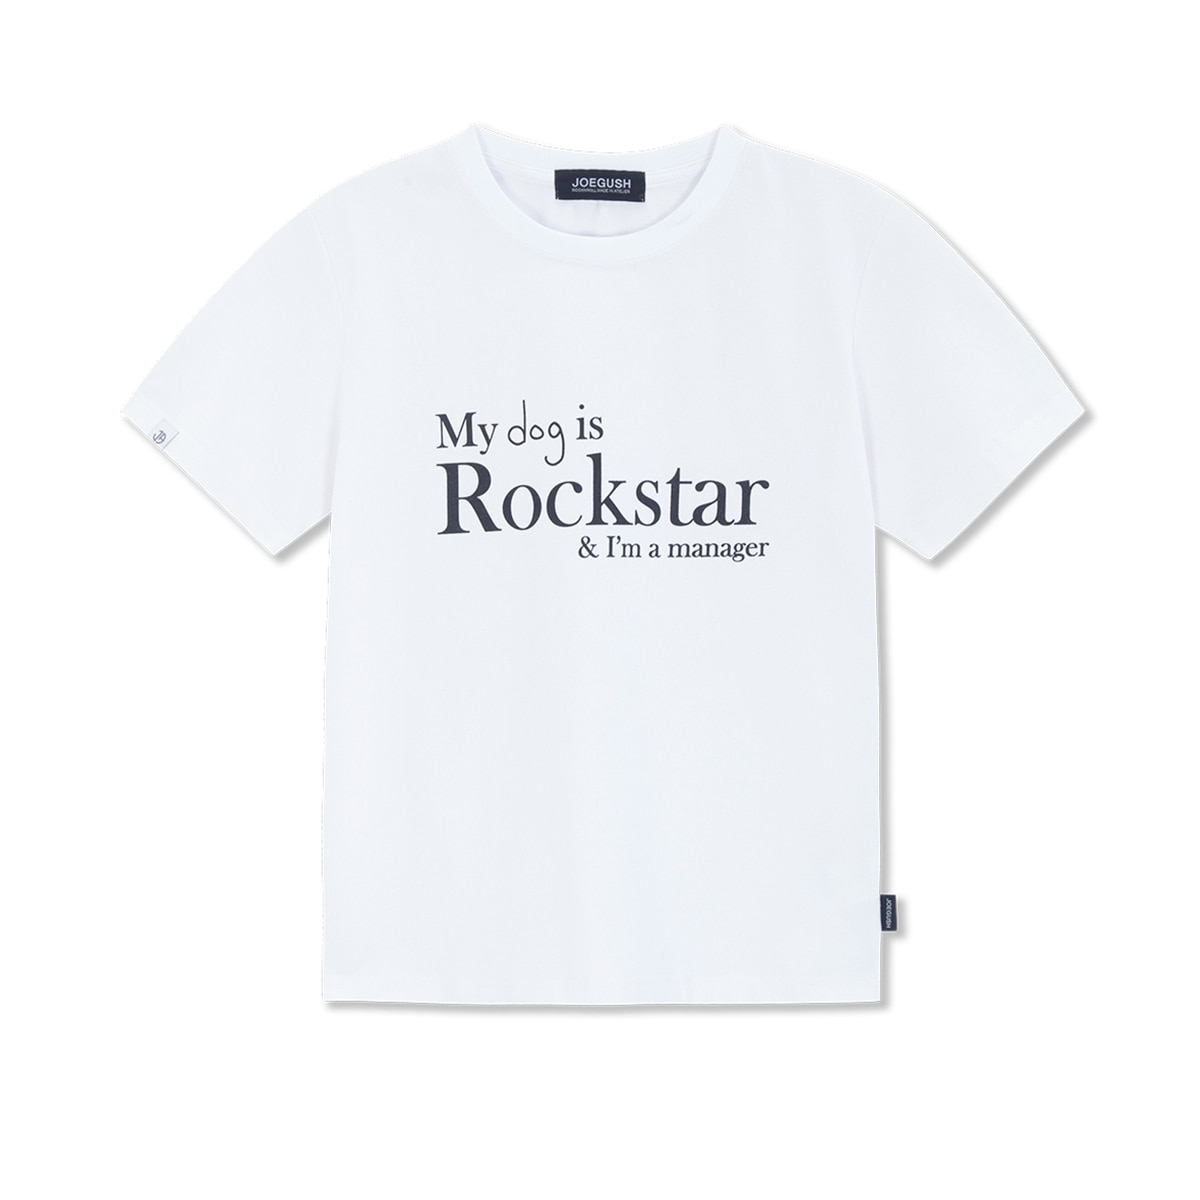 MY dog is Rockstar T-shirt (CROP VER.) (White)